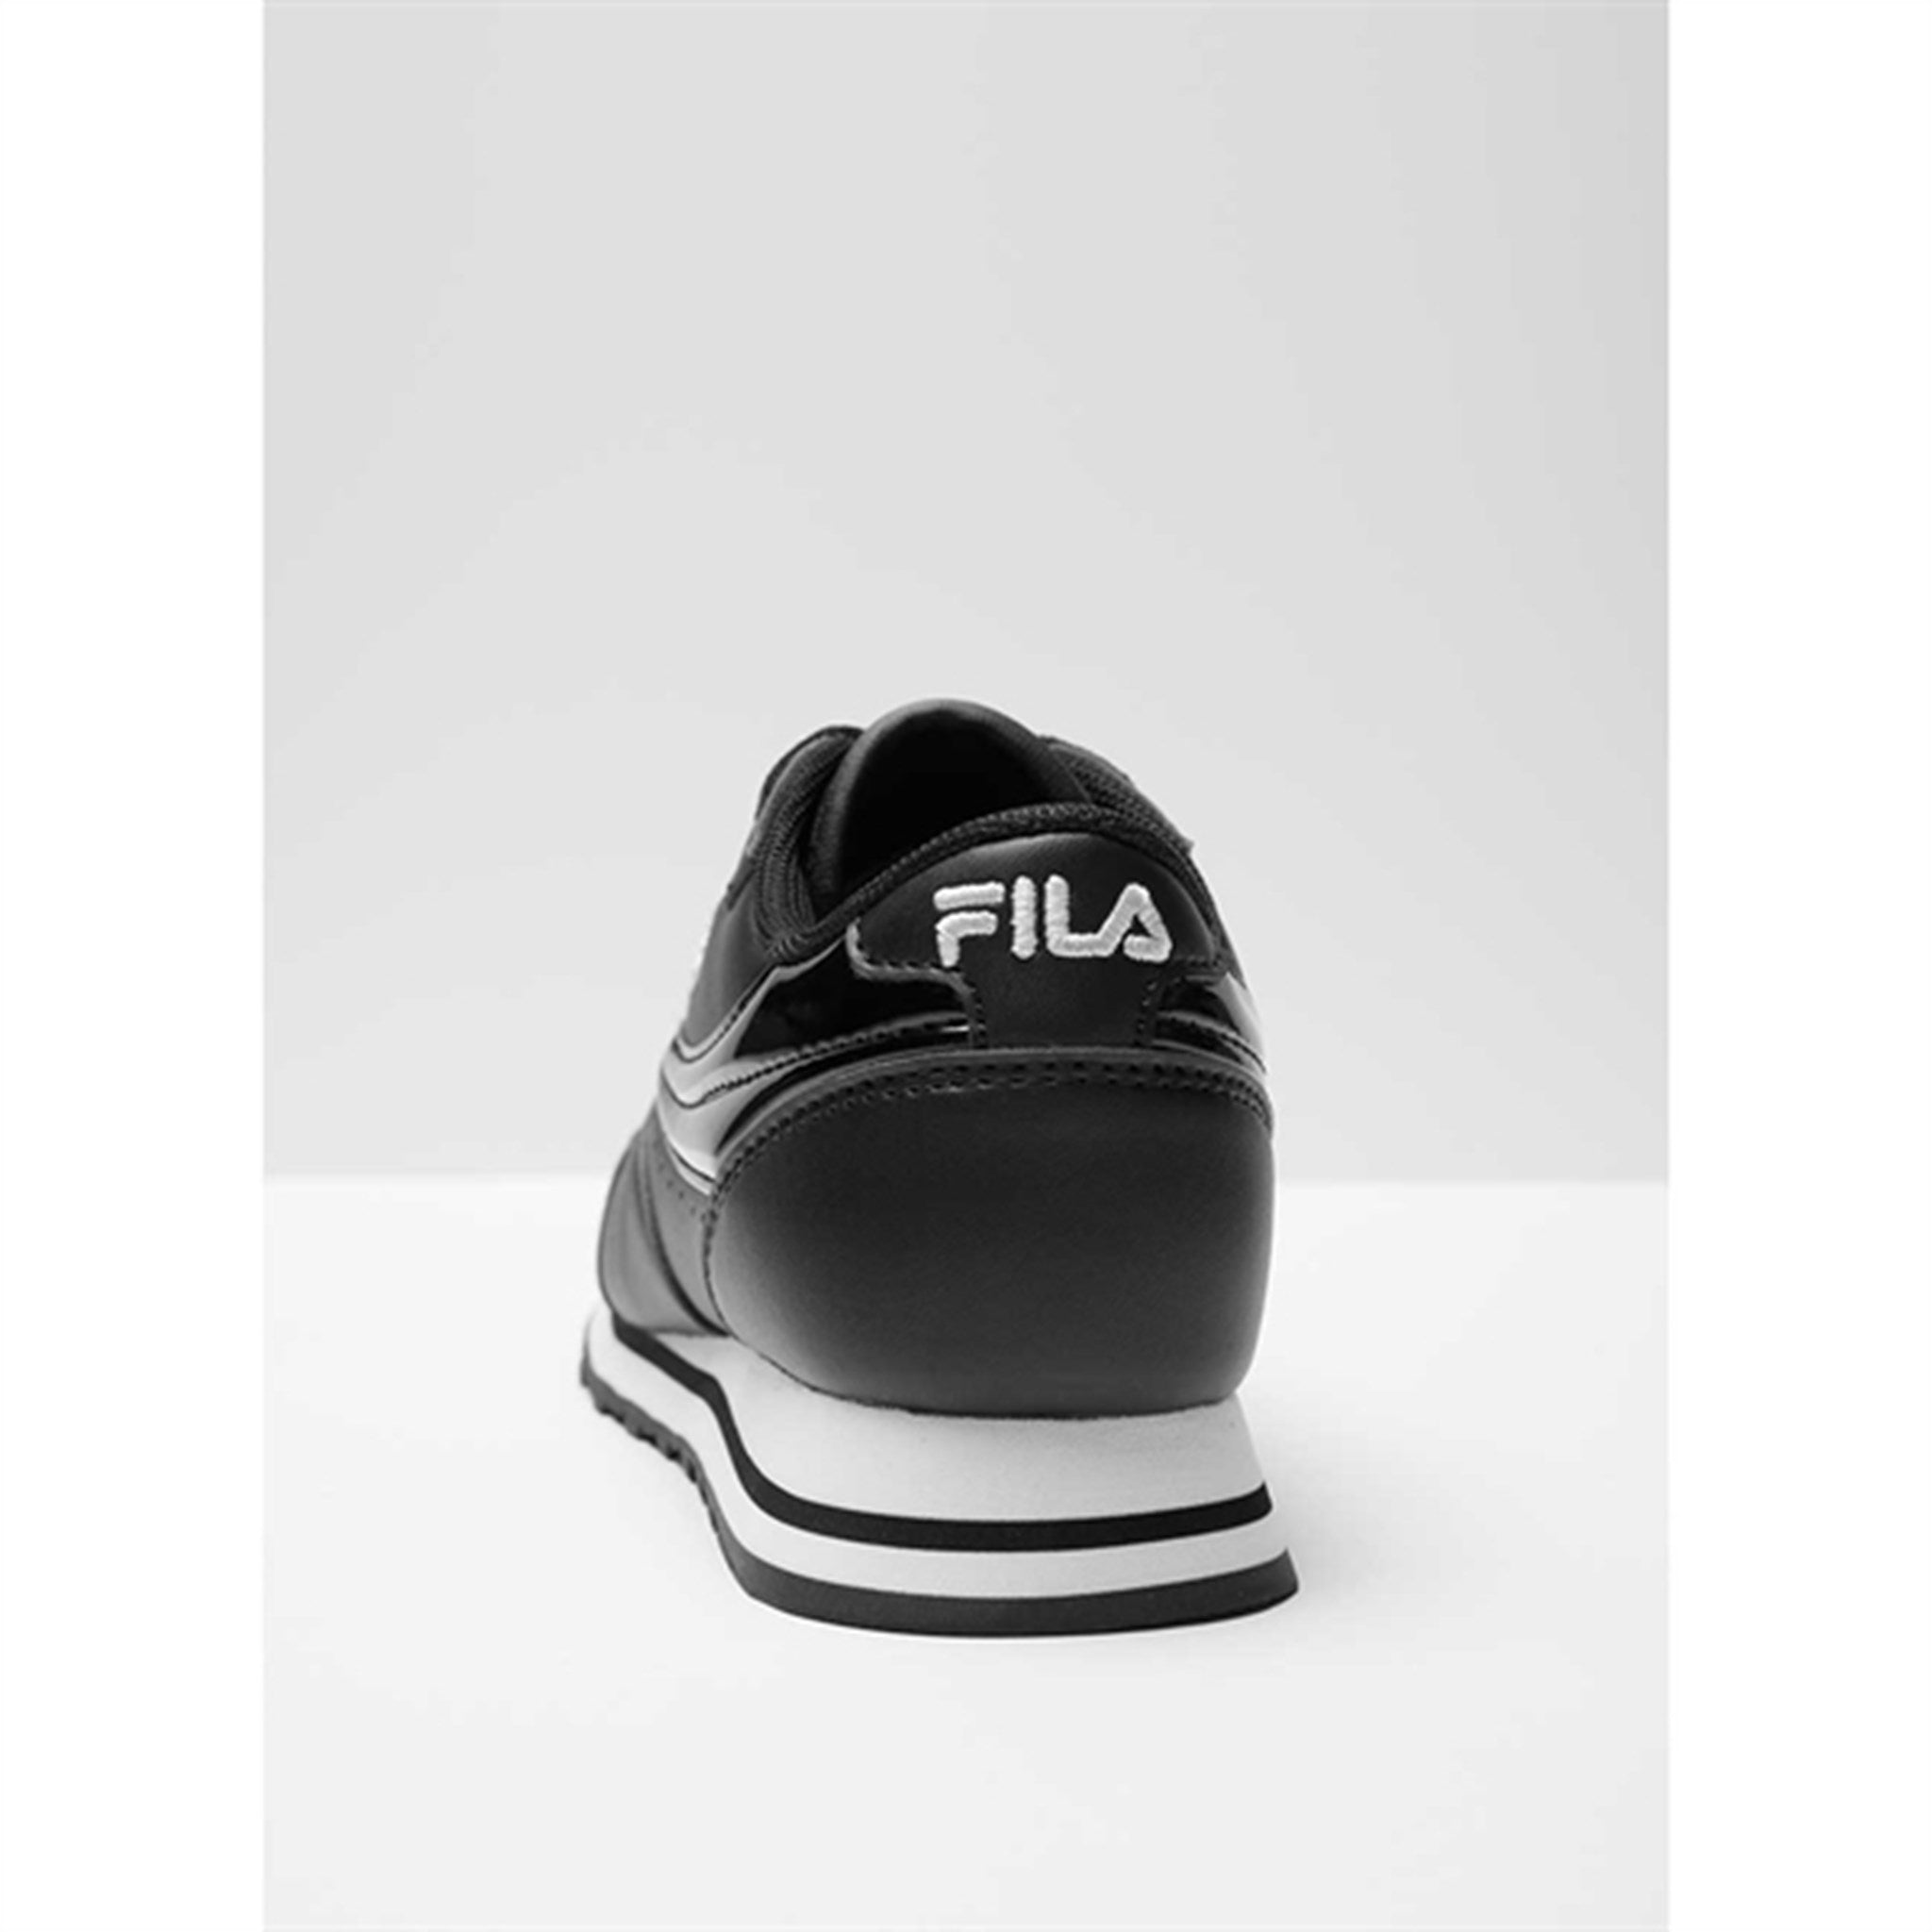 Fila Orbit F Low Sneakers Black 6